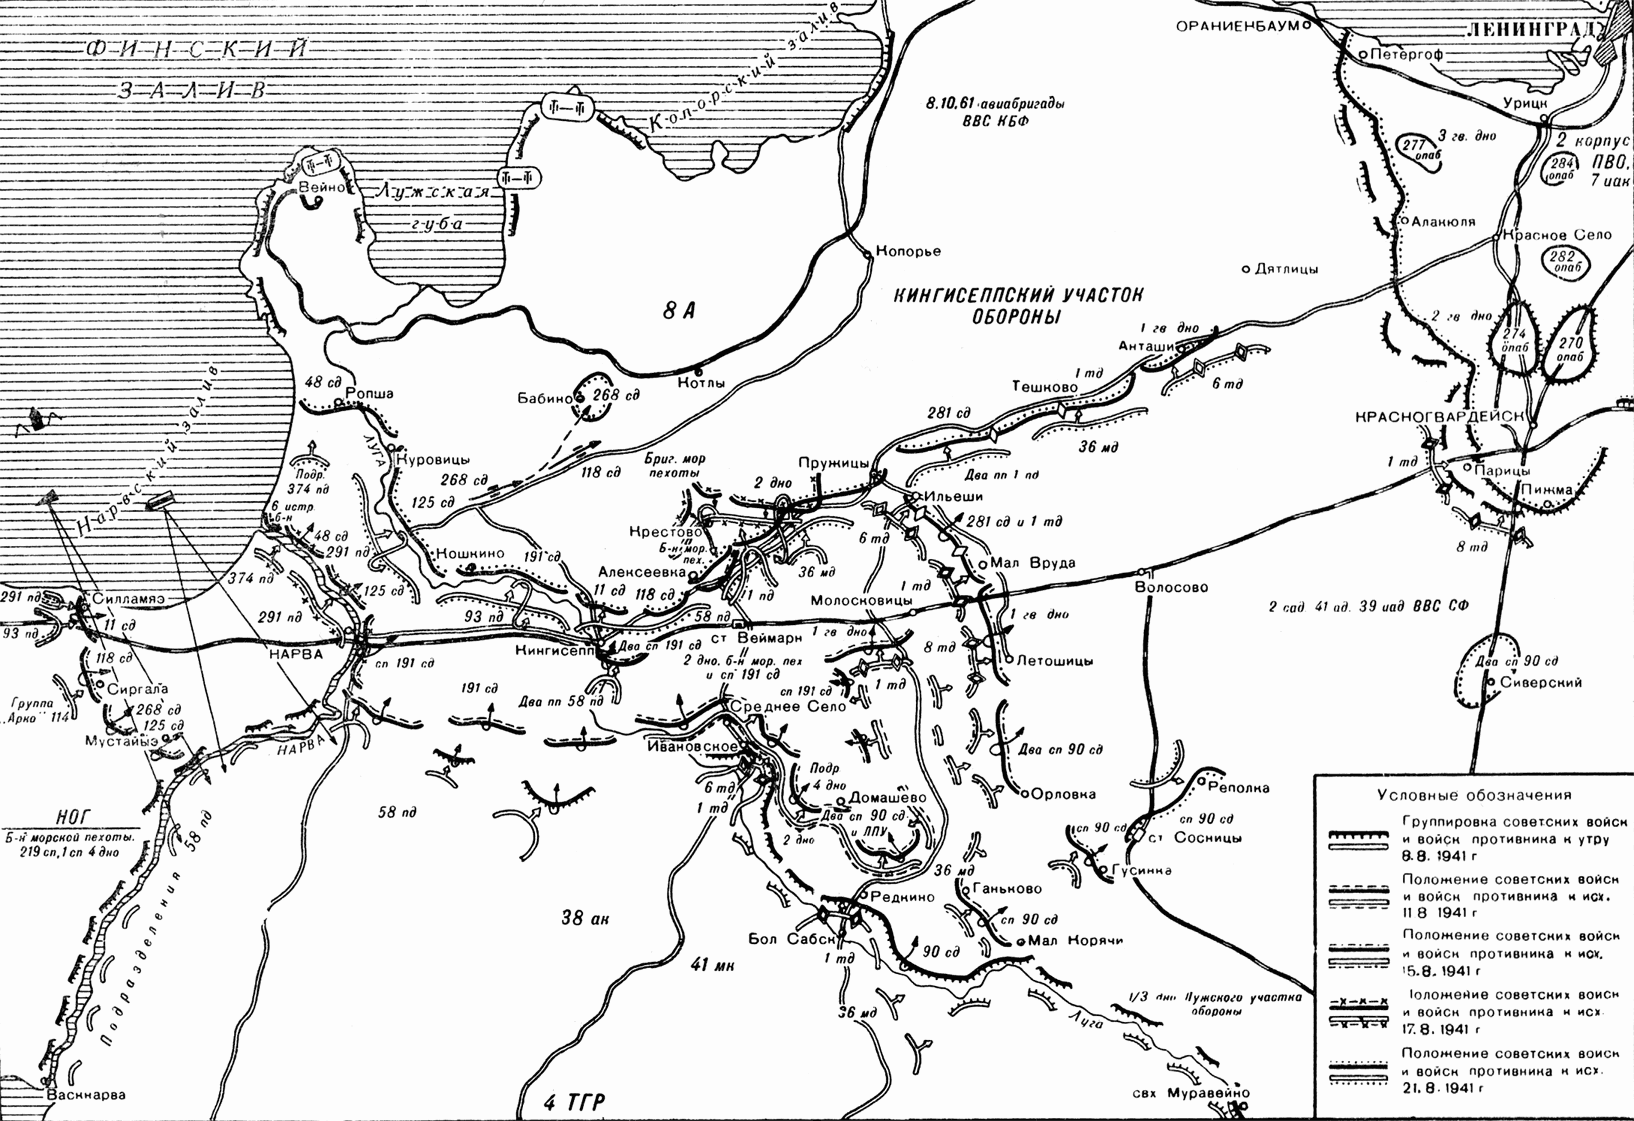 Лужский оборонительный рубеж 1941 карта. Кингисеппско-Лужская оборонительная операция. Лужский котел 1941 карты. Лужский рубеж на карте июль-август 1941. Оборонительное сражение в районе луги